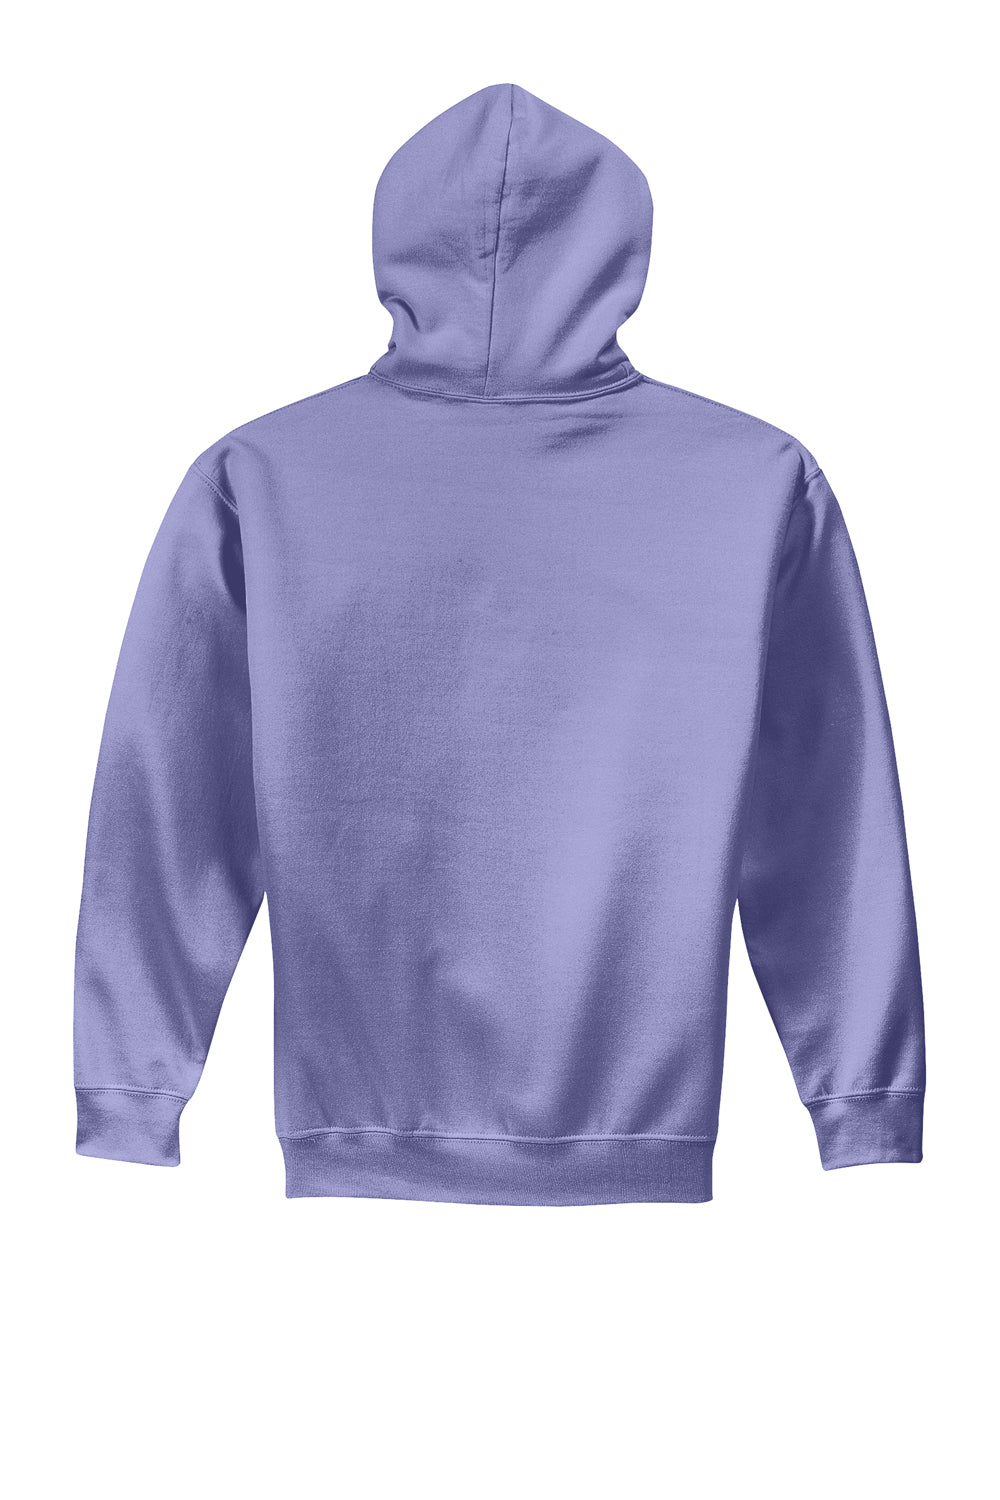 Gildan Mens Hooded Sweatshirt Hoodie Violet Purple Flat Back